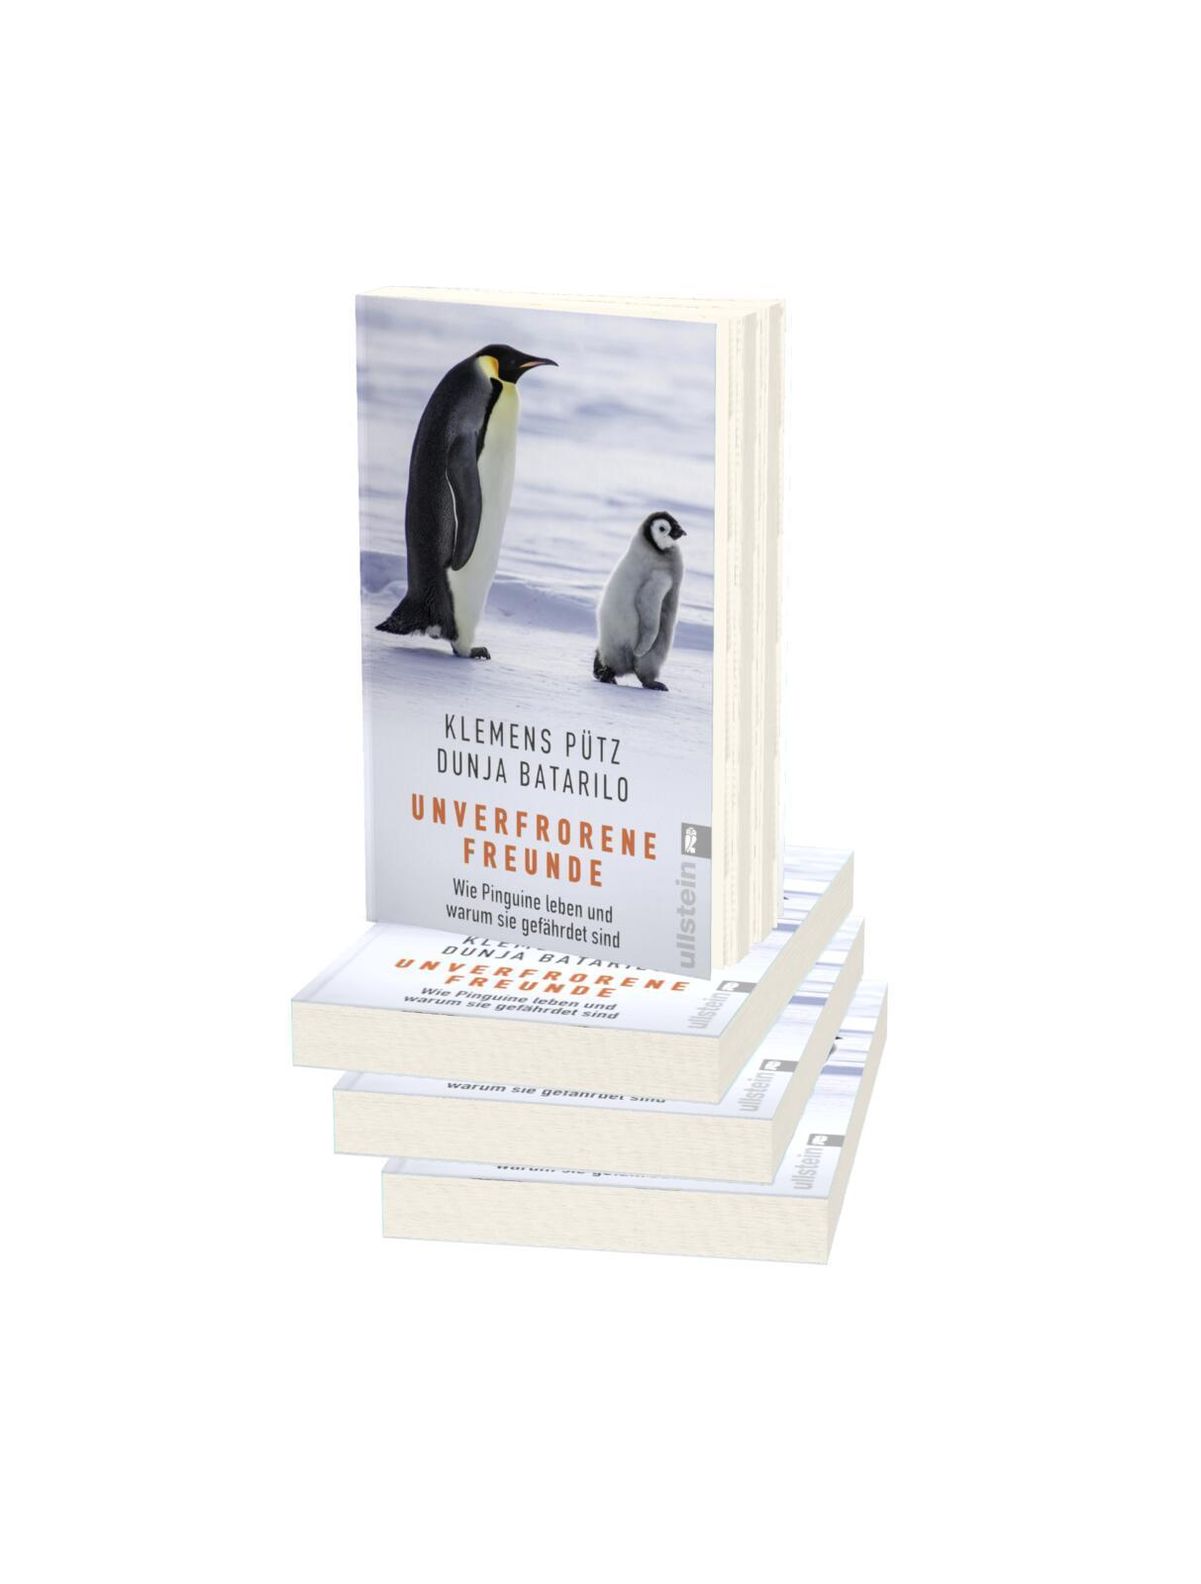 Pinguine: Warum der Klimawandel Königspinguine gefährdet, Artenschutz, Tiere, Natur, Verstehen